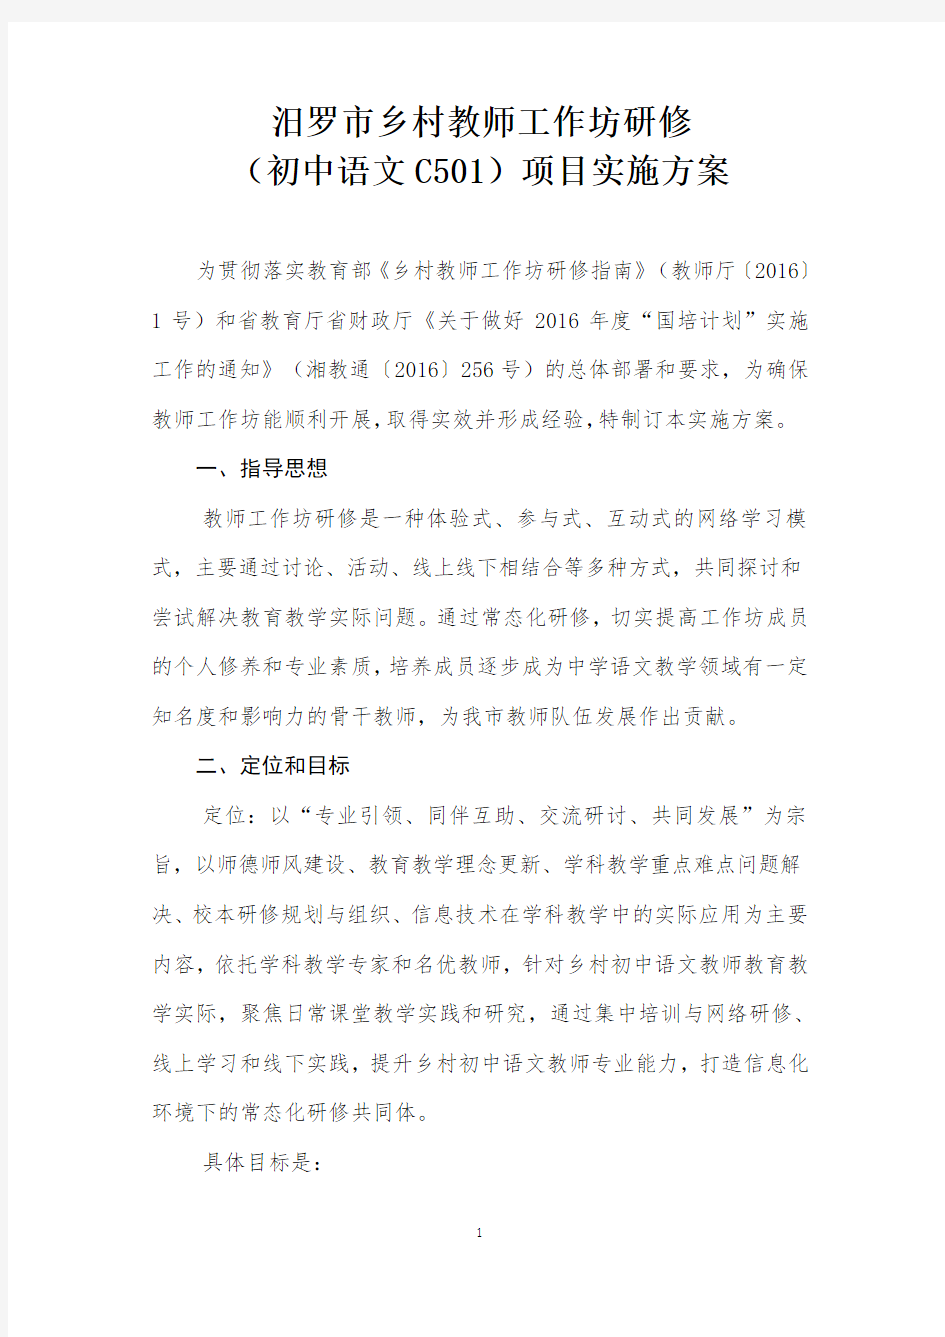 初中语文工作坊C501研修实施方案